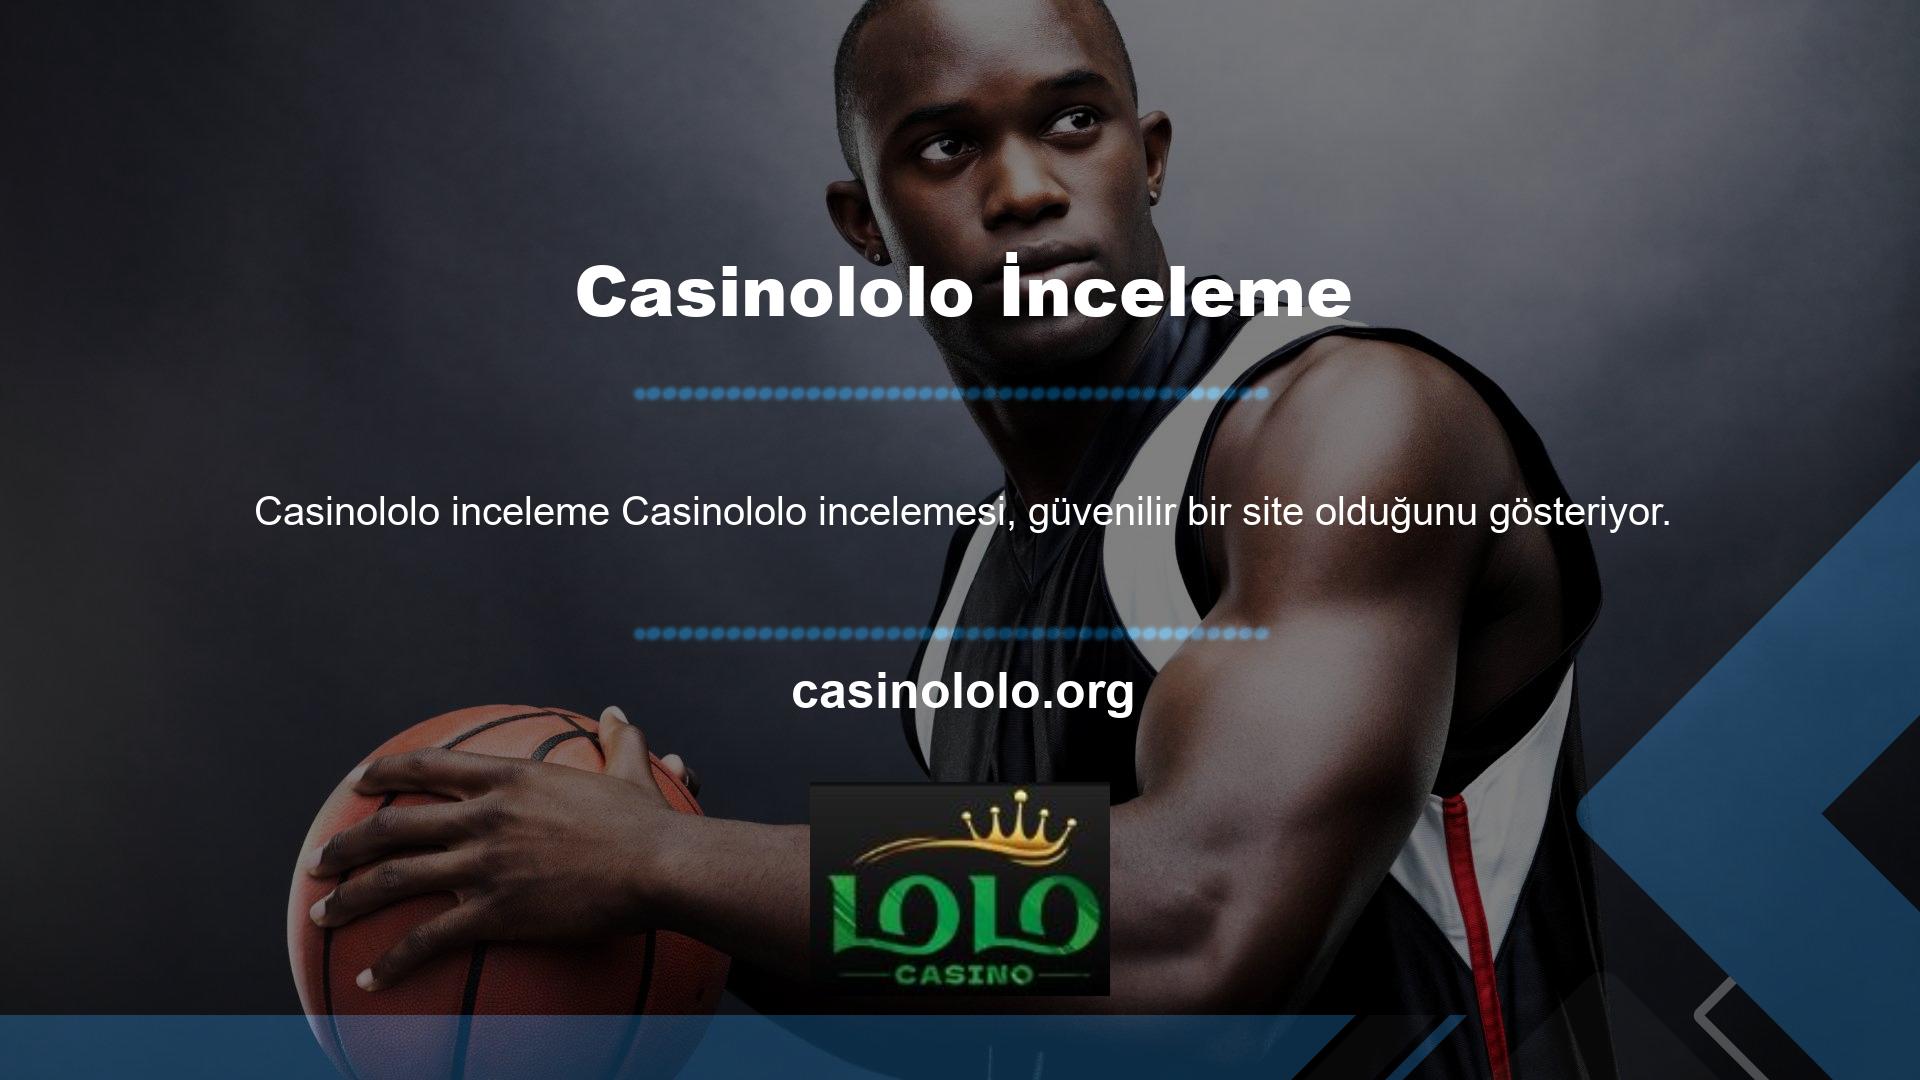 Casinololo web siteleri sürekli gözetim altındadır ve dolandırıcılık veya aldatmaya izin verilmez